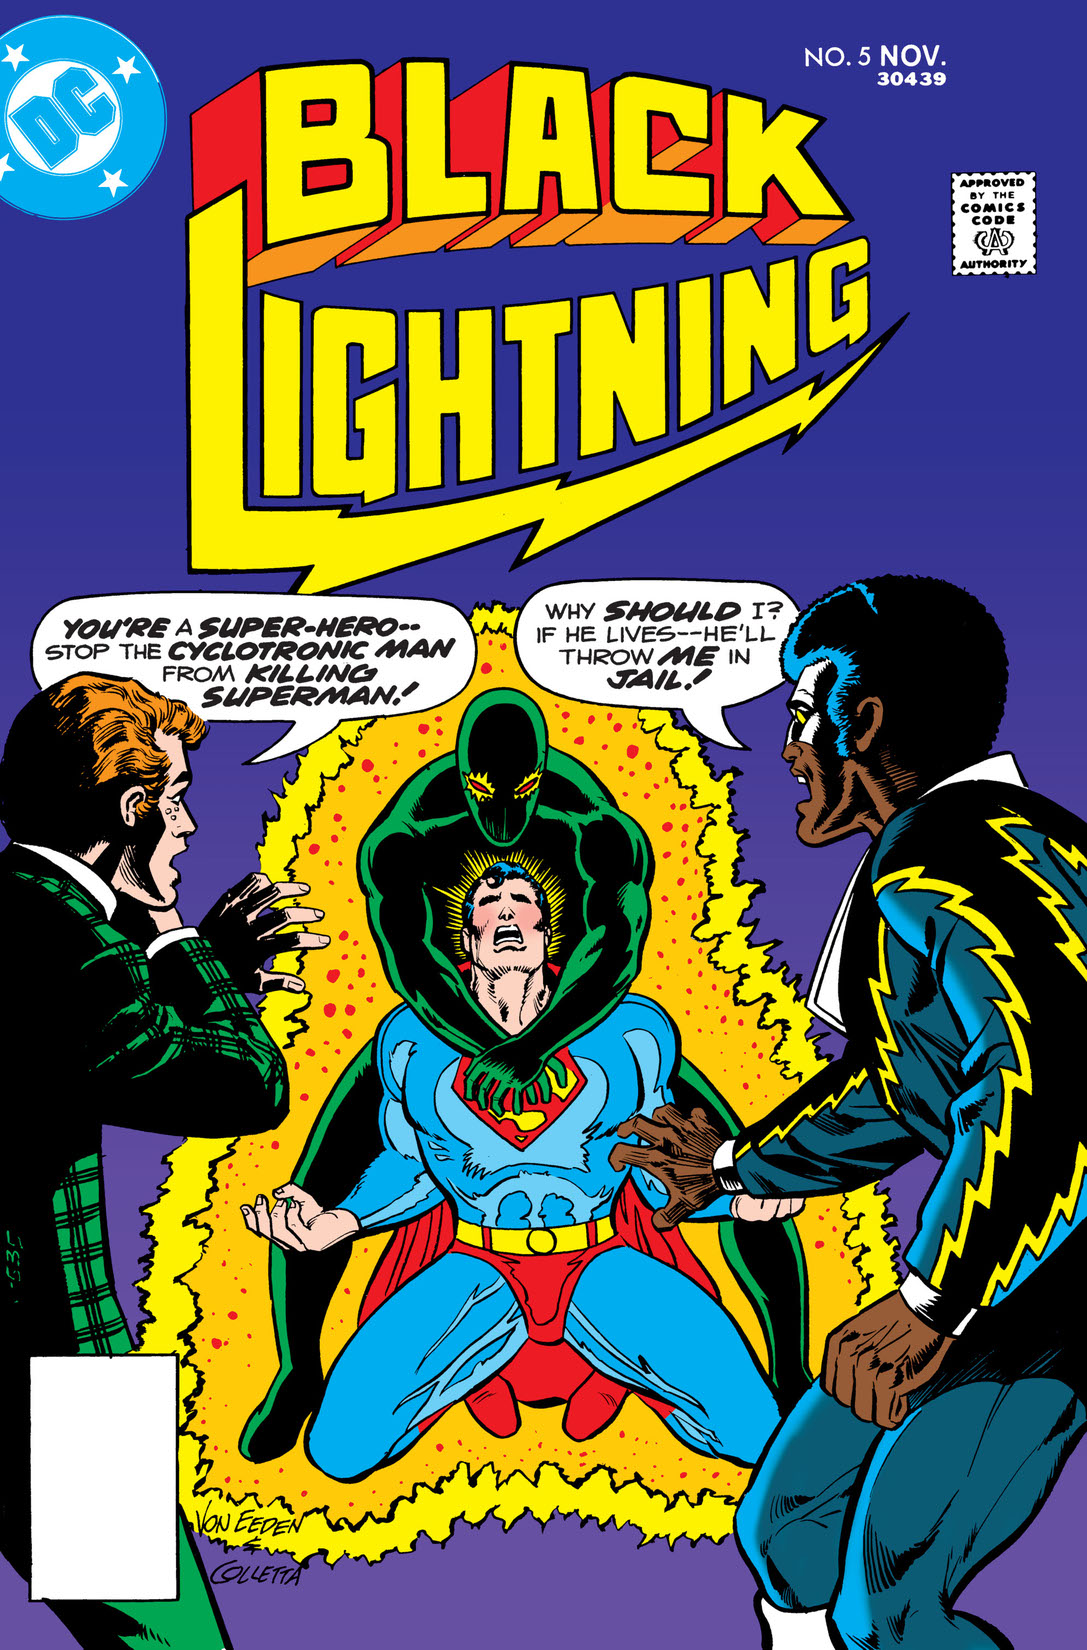 Black Lightning (1977-) #5 preview images